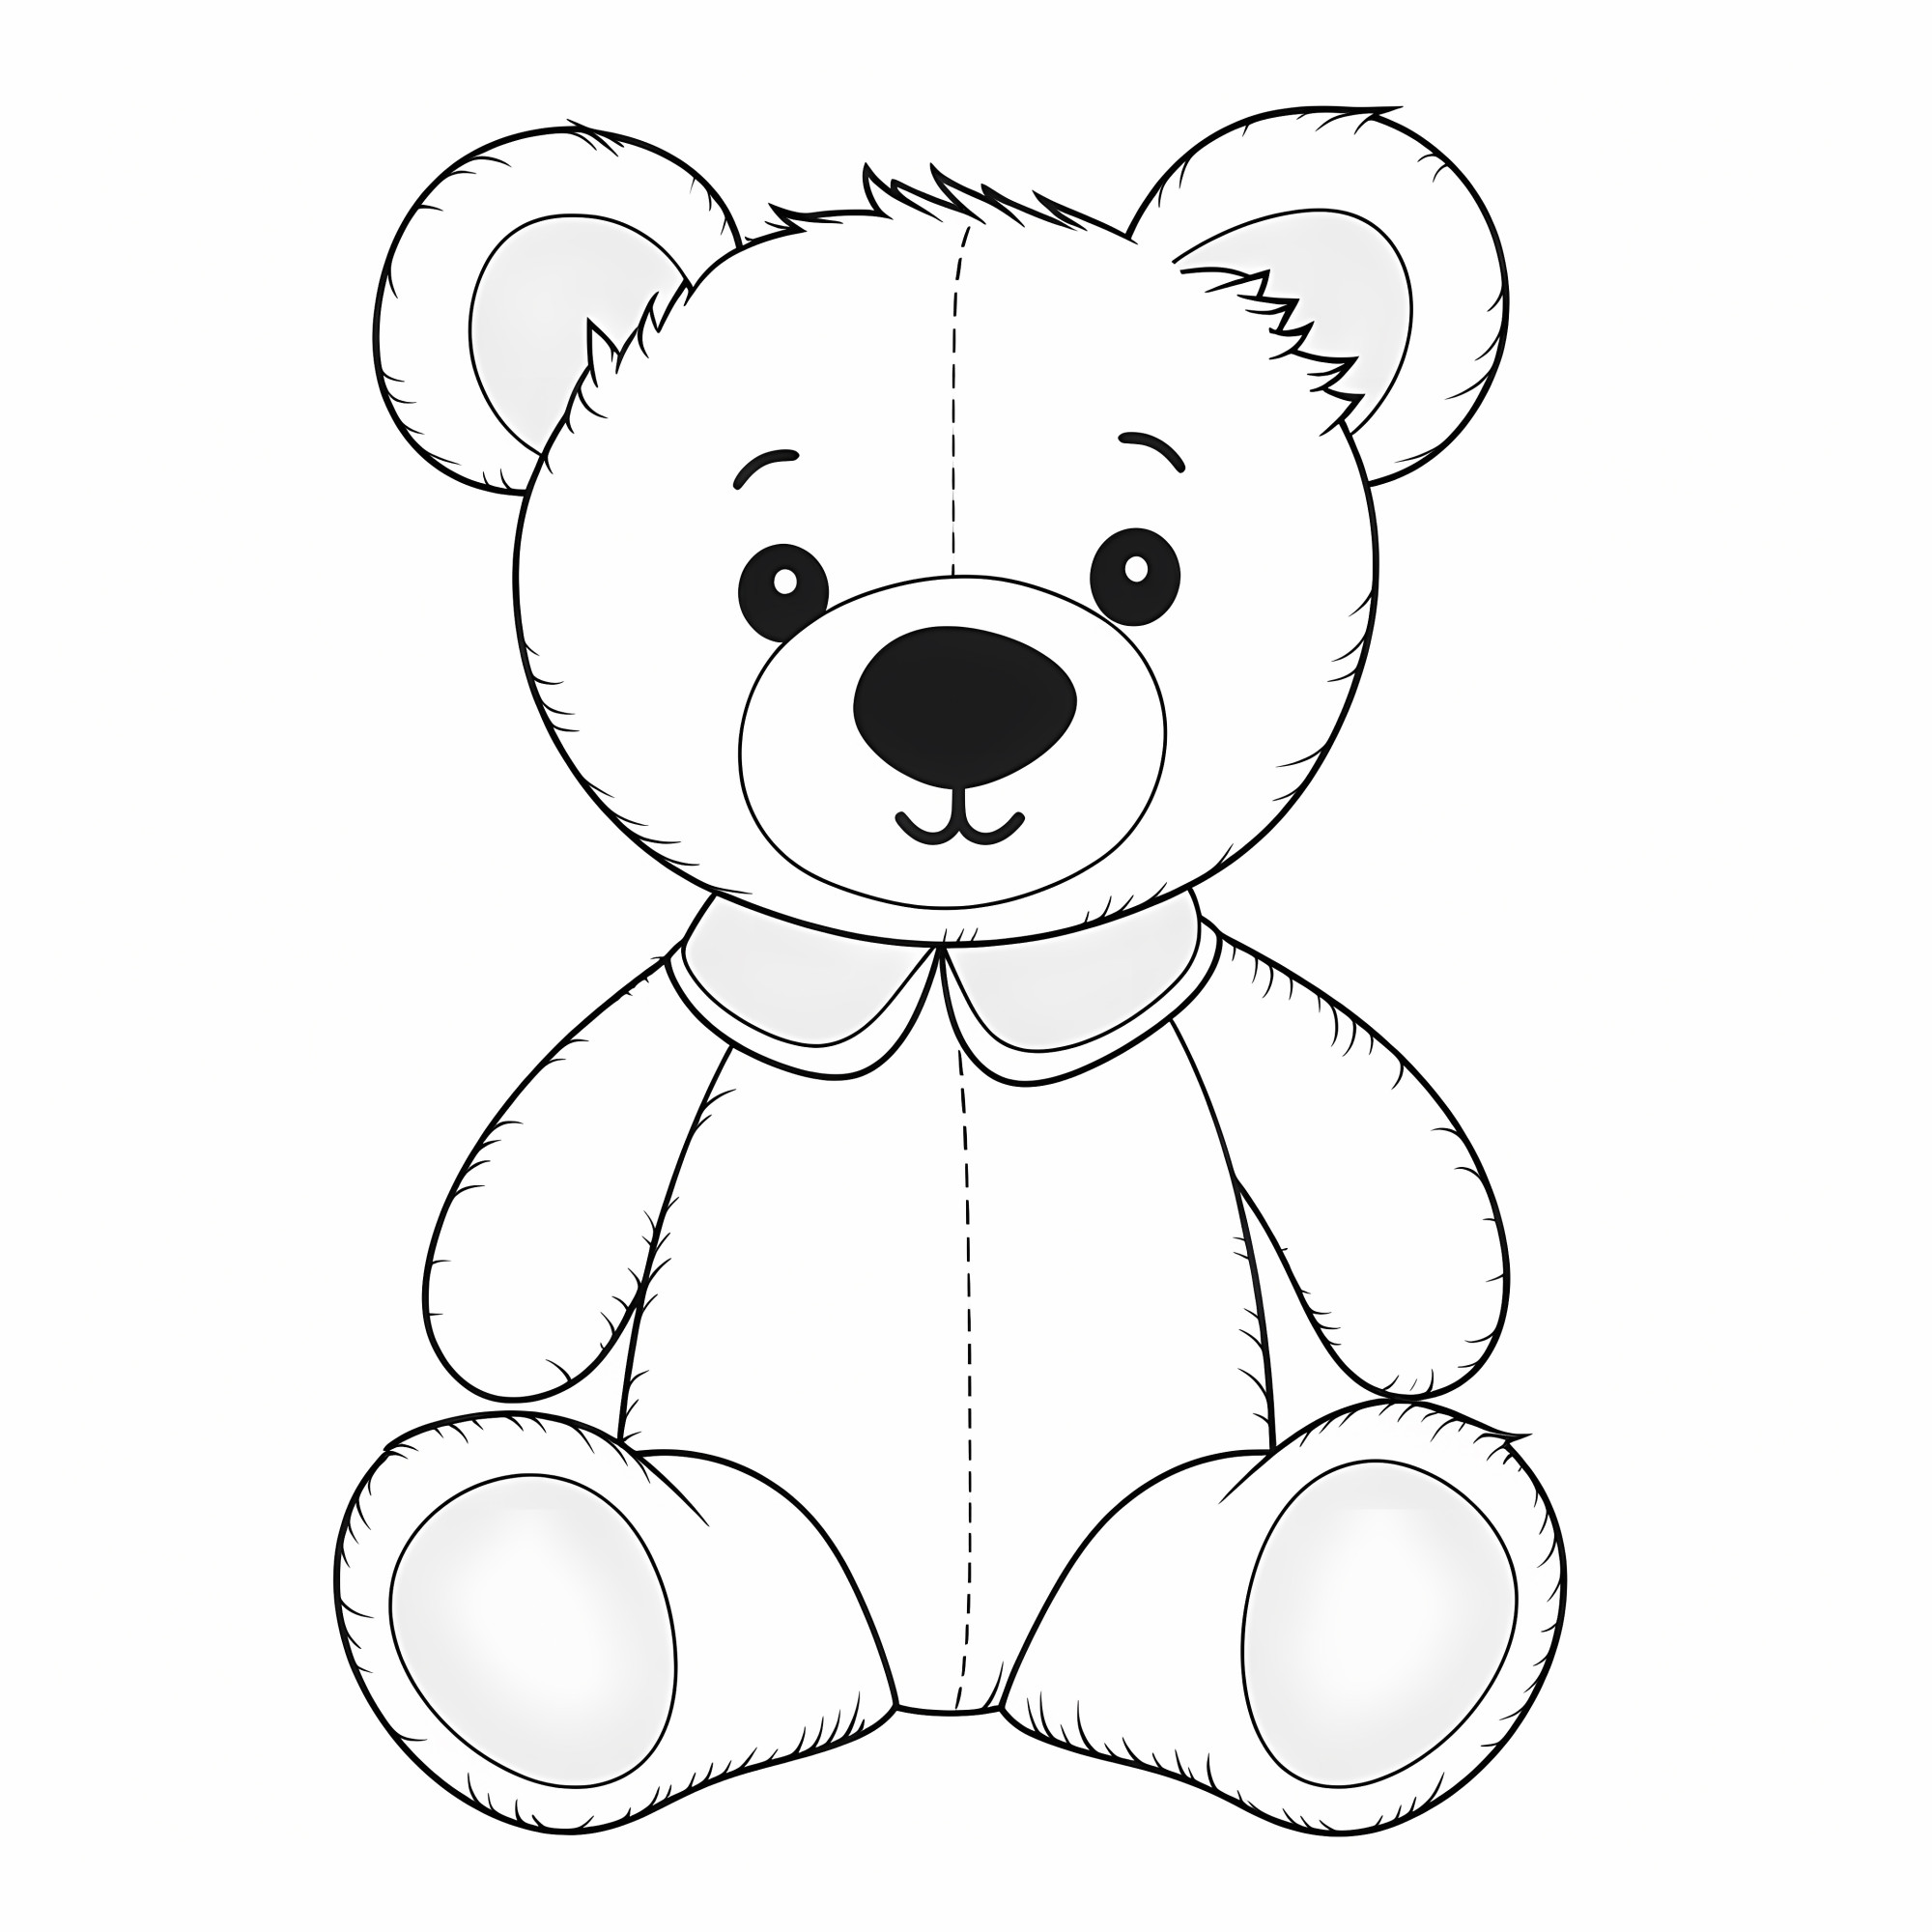 Раскраска для детей: плюшевый медвежонок